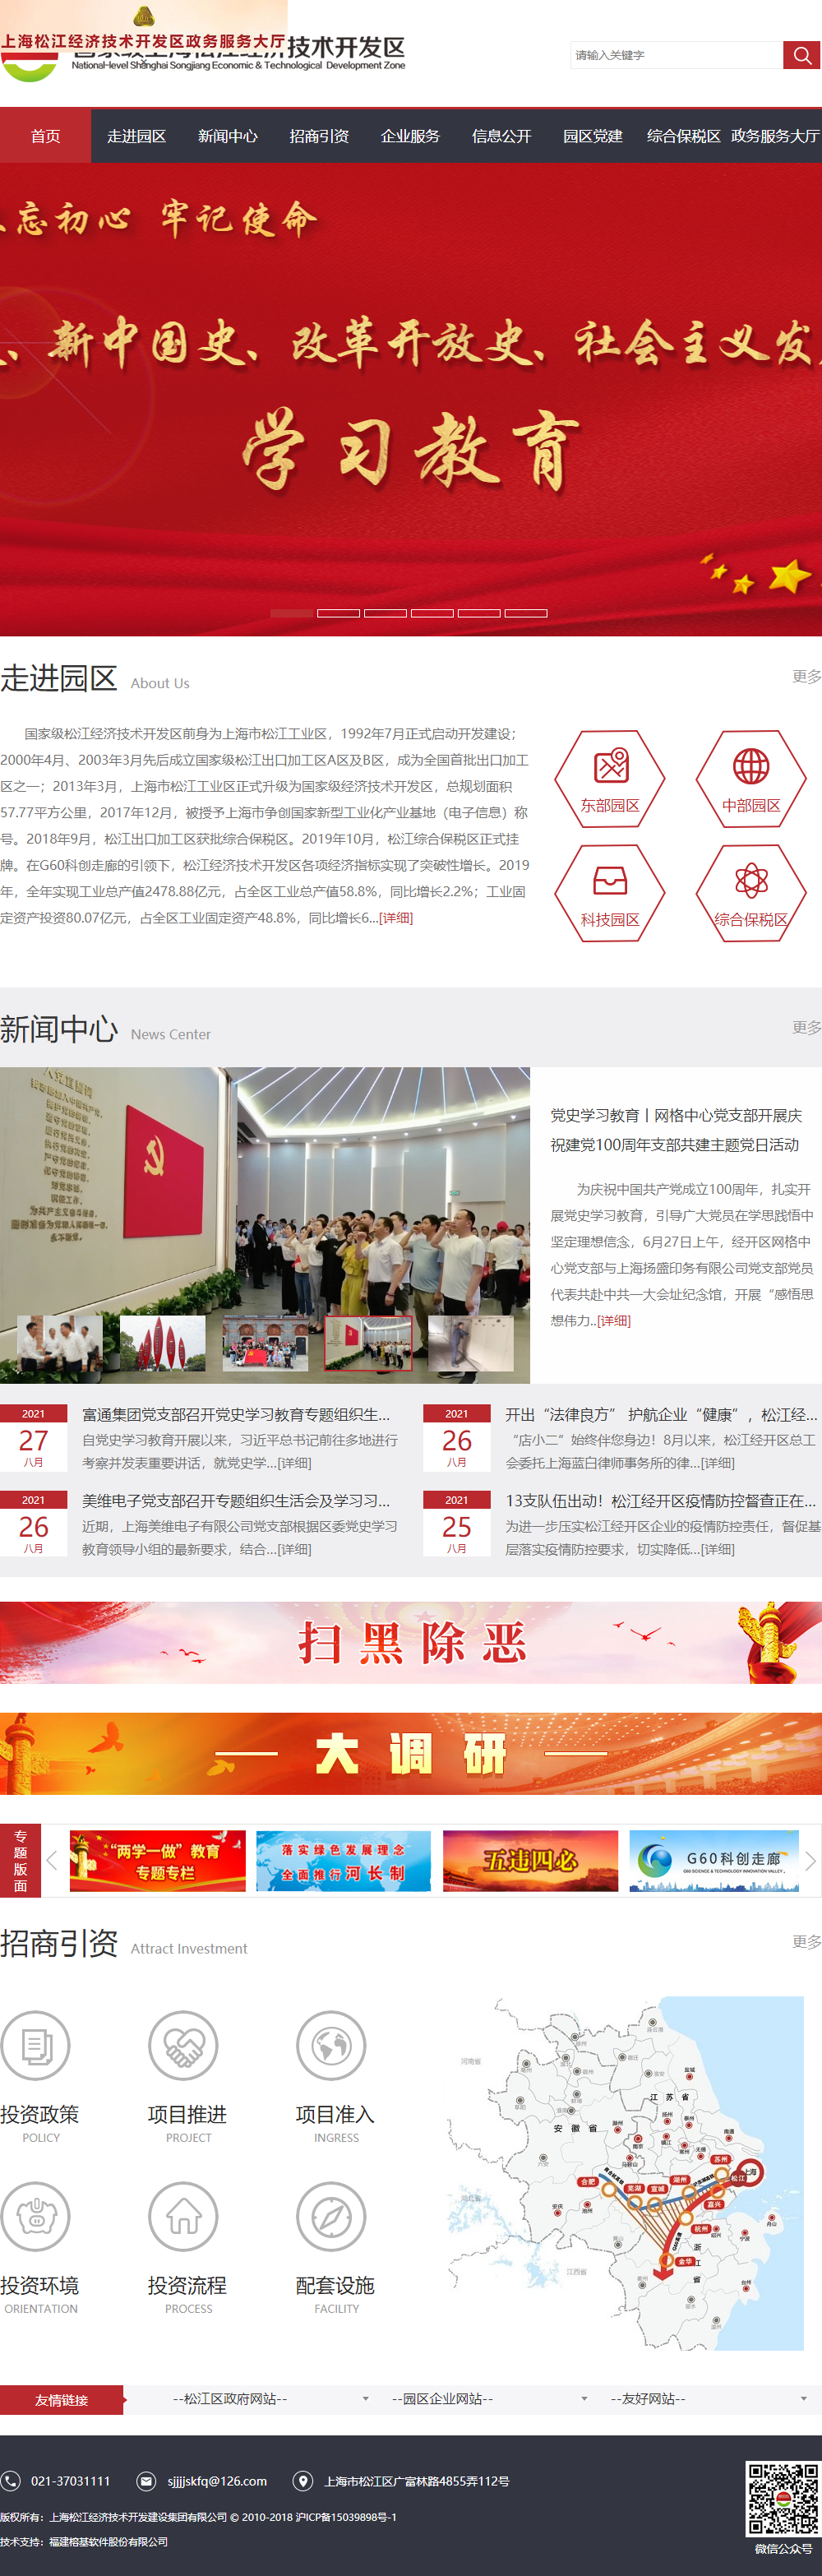 上海松江经济技术开发建设集团有限公司网站案例